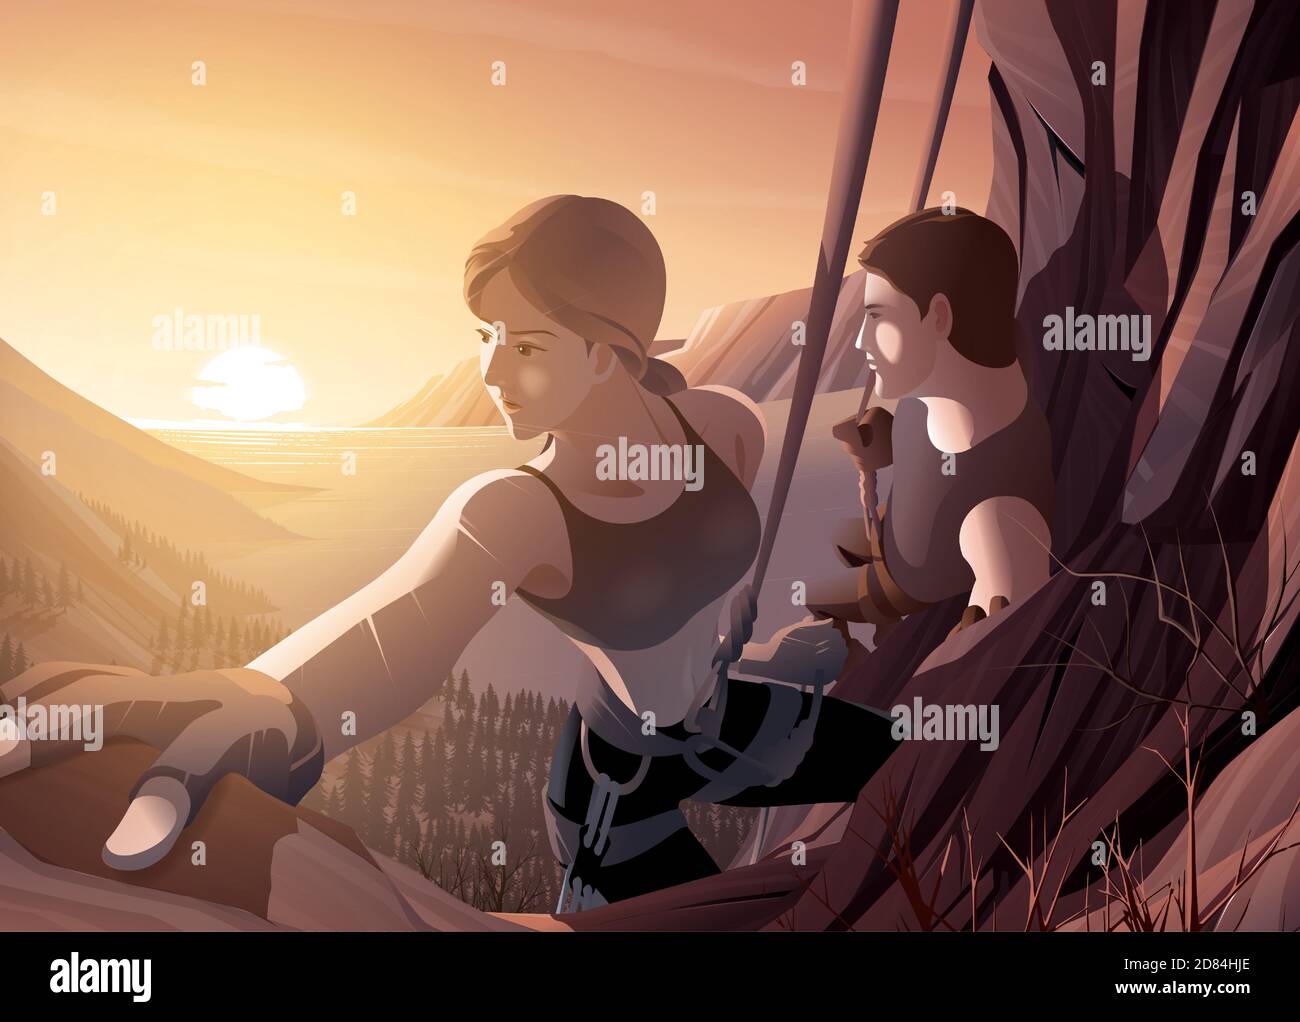 Immagine vettoriale di una giovane coppia che sale insieme sulla scogliera con uno sfondo del bellissimo scenario di estuario del mare e il sole che sorge Illustrazione Vettoriale